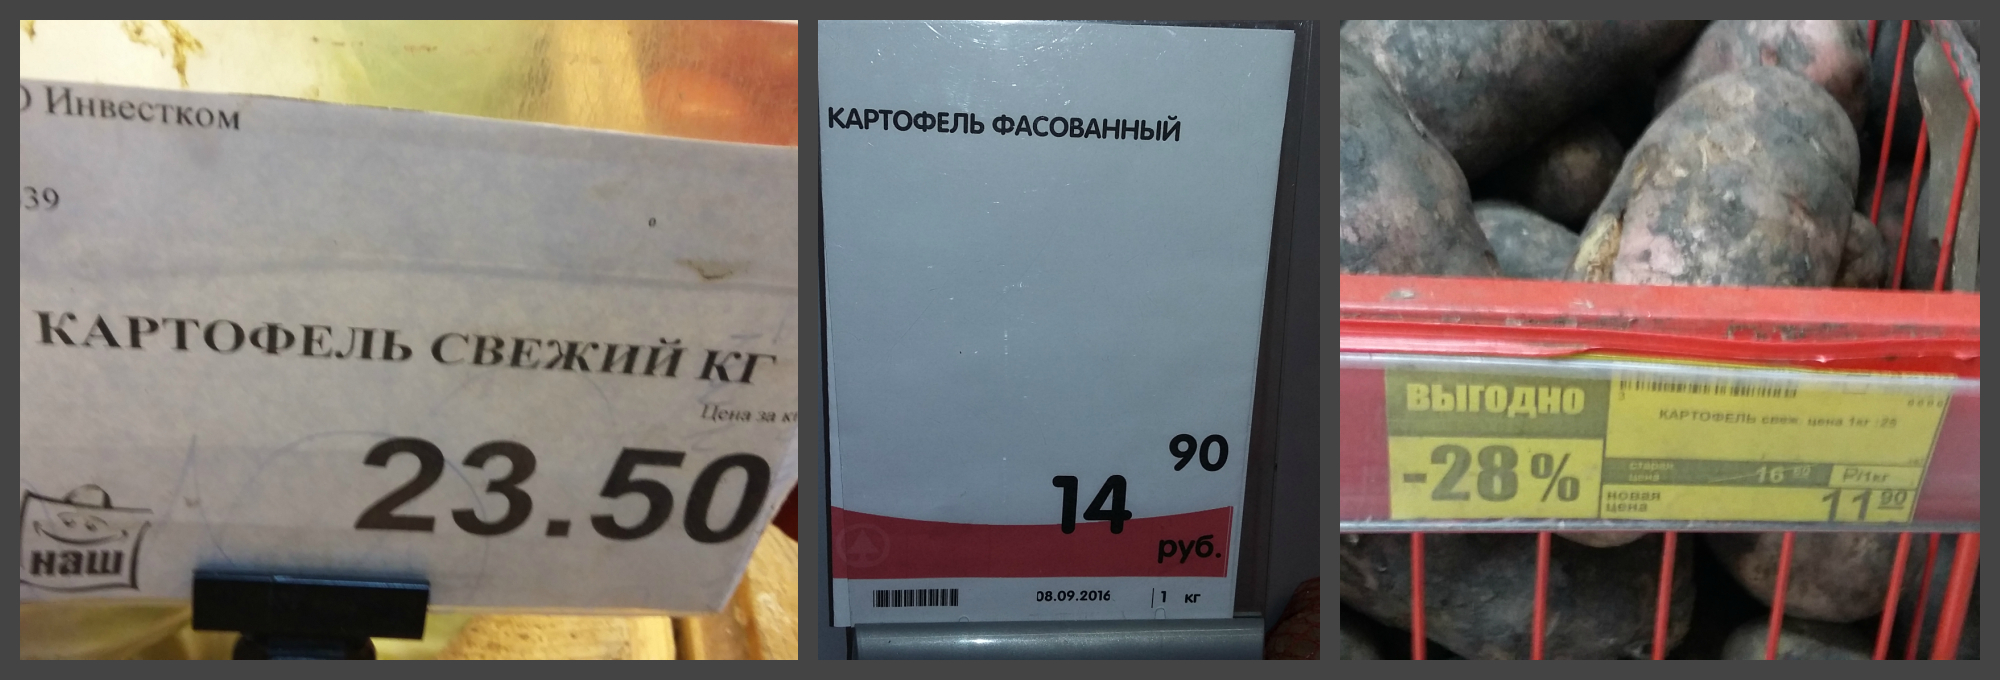 Килограмм картошки стоит 40 рублей. Картофель фасованный. Магнит картофель. Картофель фасованный магнит. Картошка в магните.